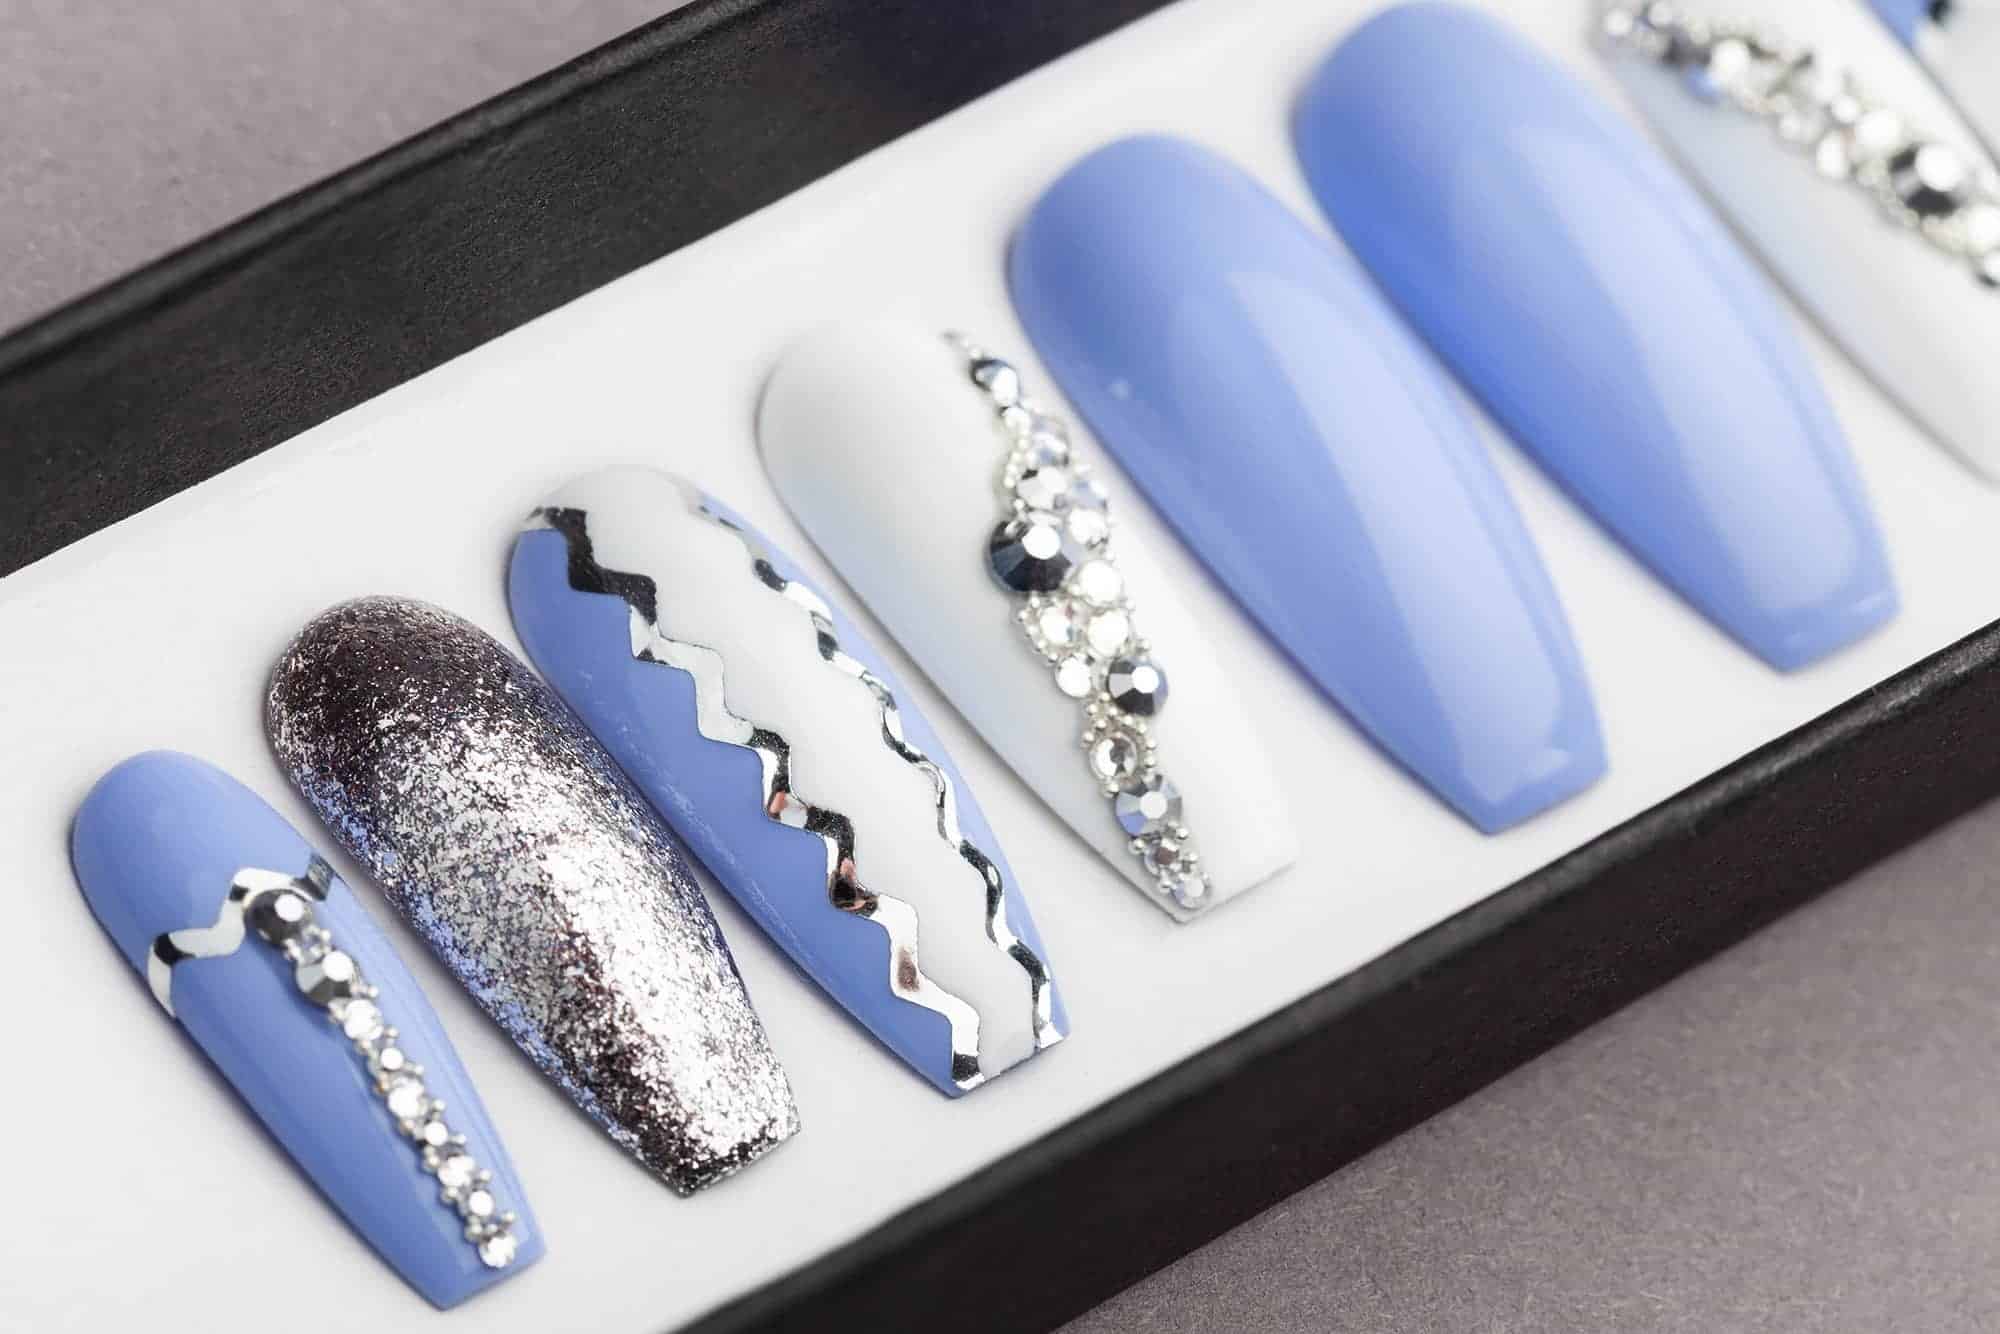 Sky Blue Press on Nails with Swarovski crystals | Hand-painted Nail Art | Fake Nails | False Nails | Glue On Nails